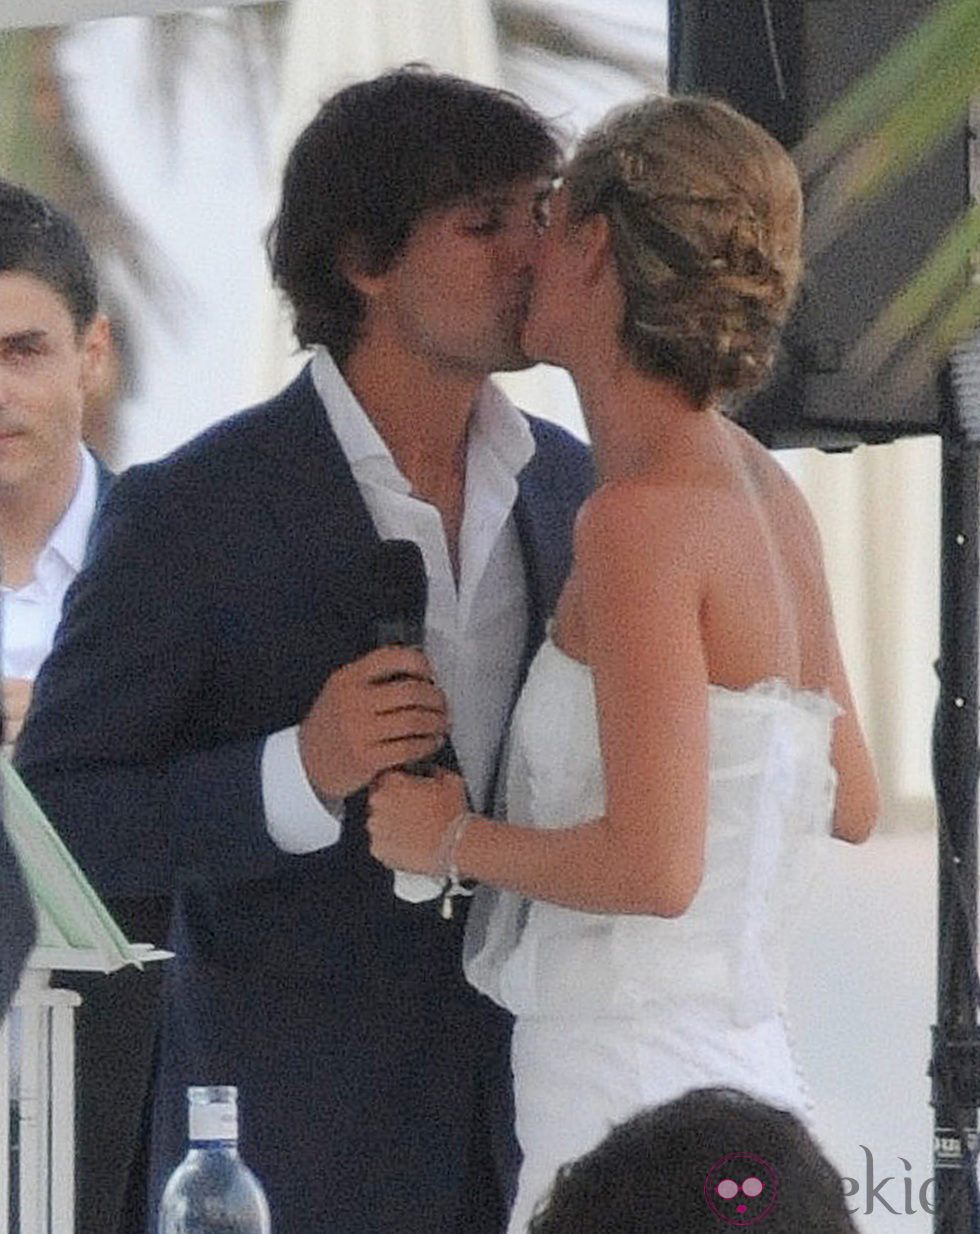 El hermano de Amaia Salamanca y su mujer besándose en su boda